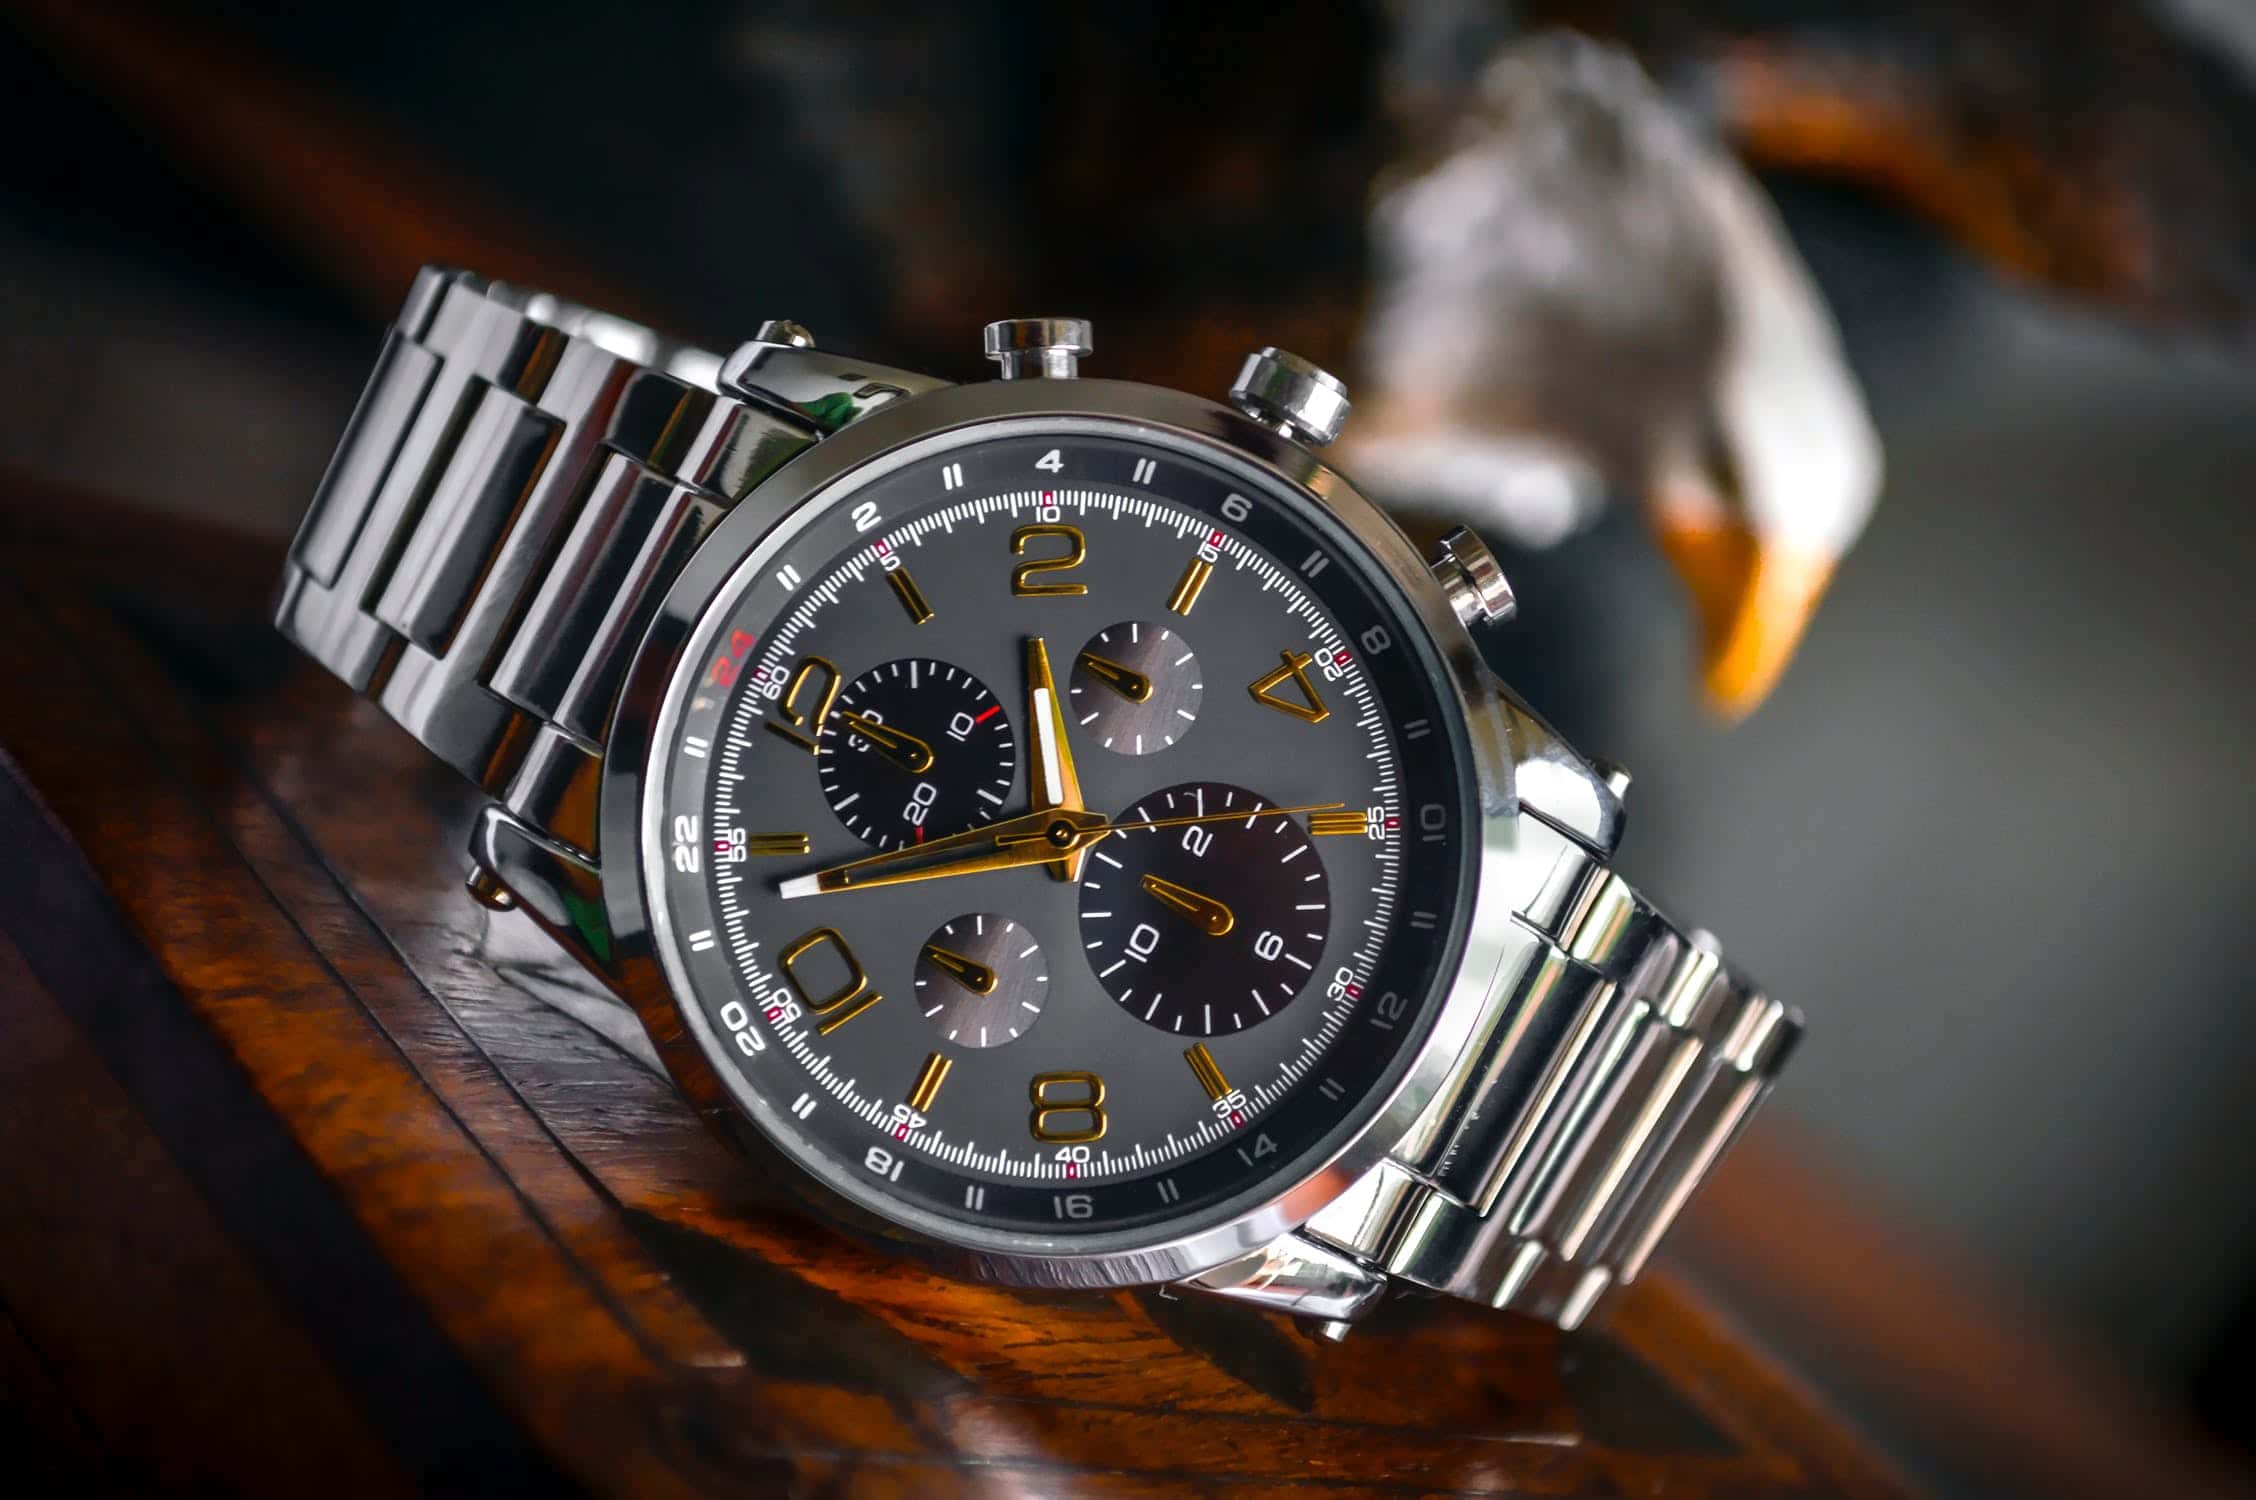 Modèle de montre de luxe pour homme issu d'une grande marque horlogère